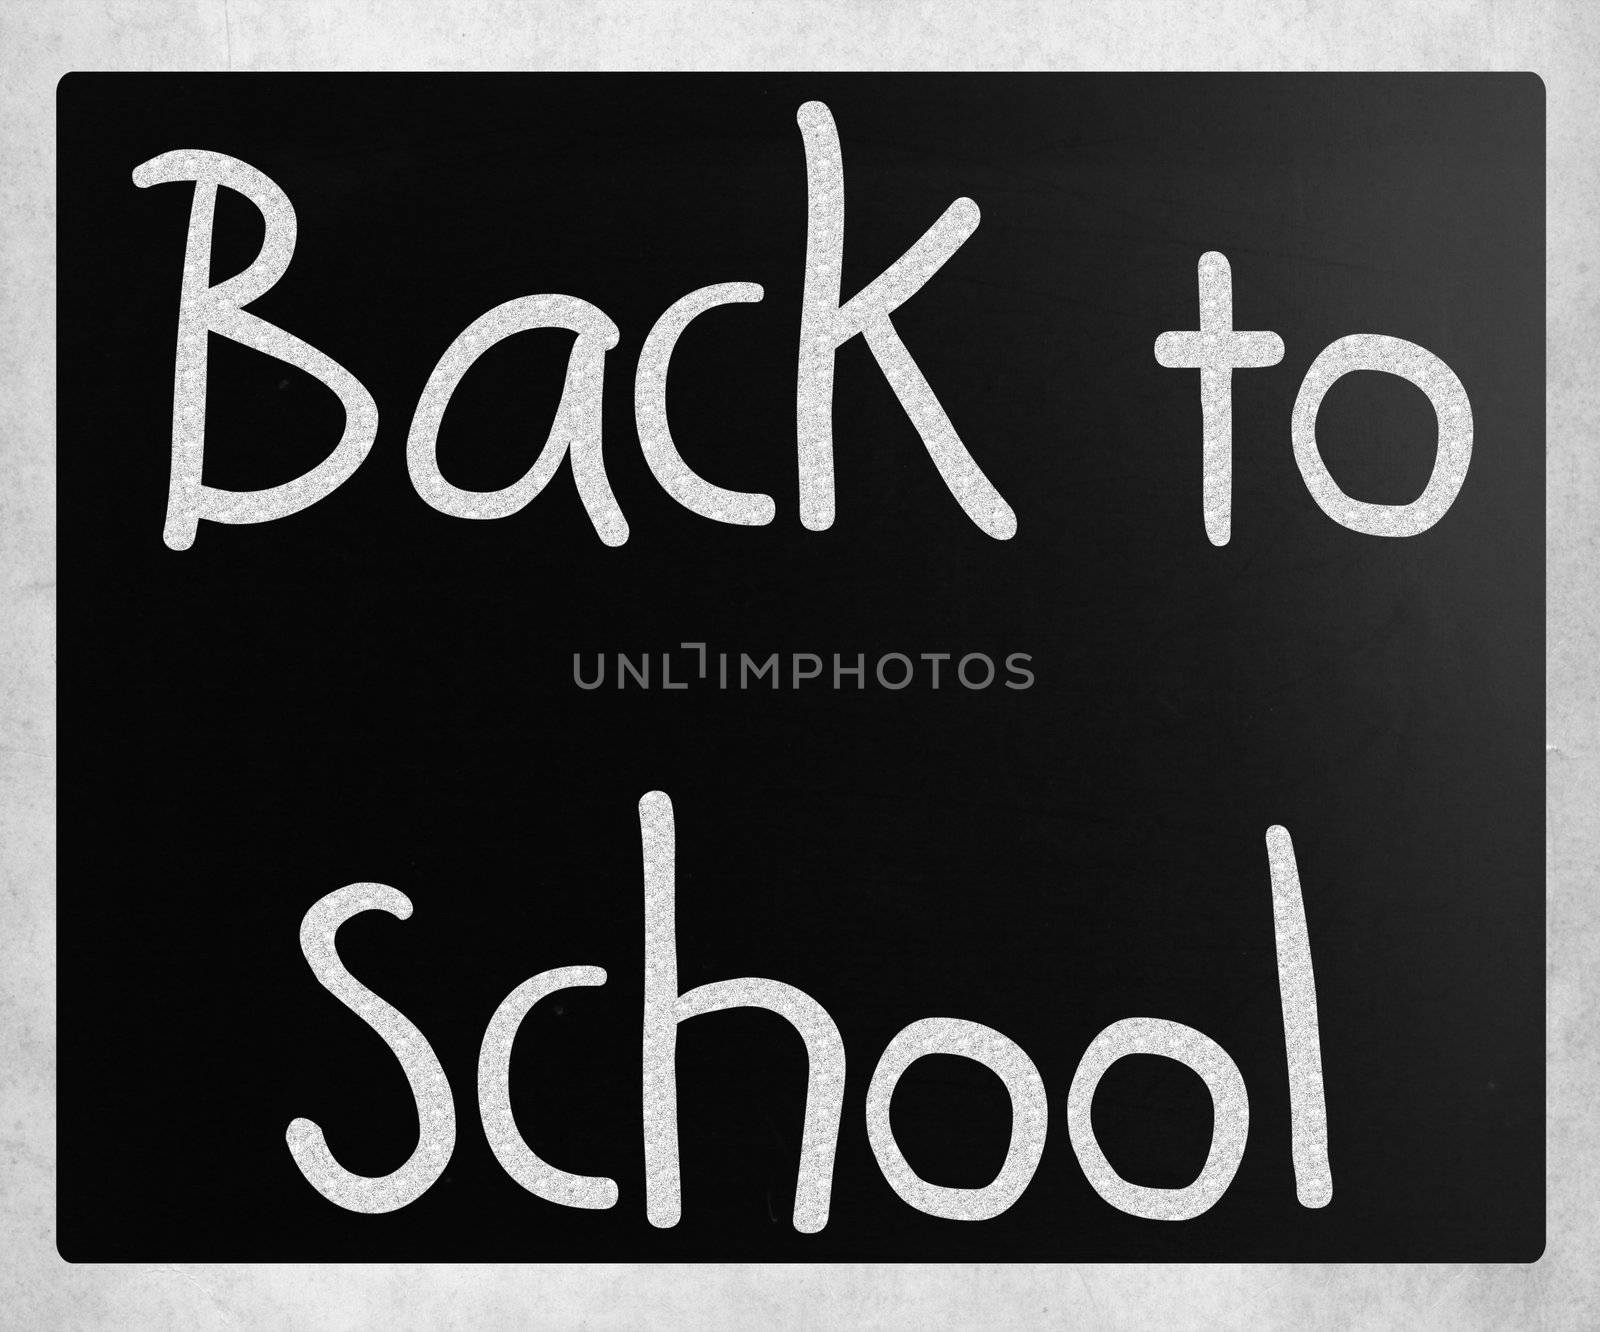 "Back to school" handwritten with white chalk on a blackboard